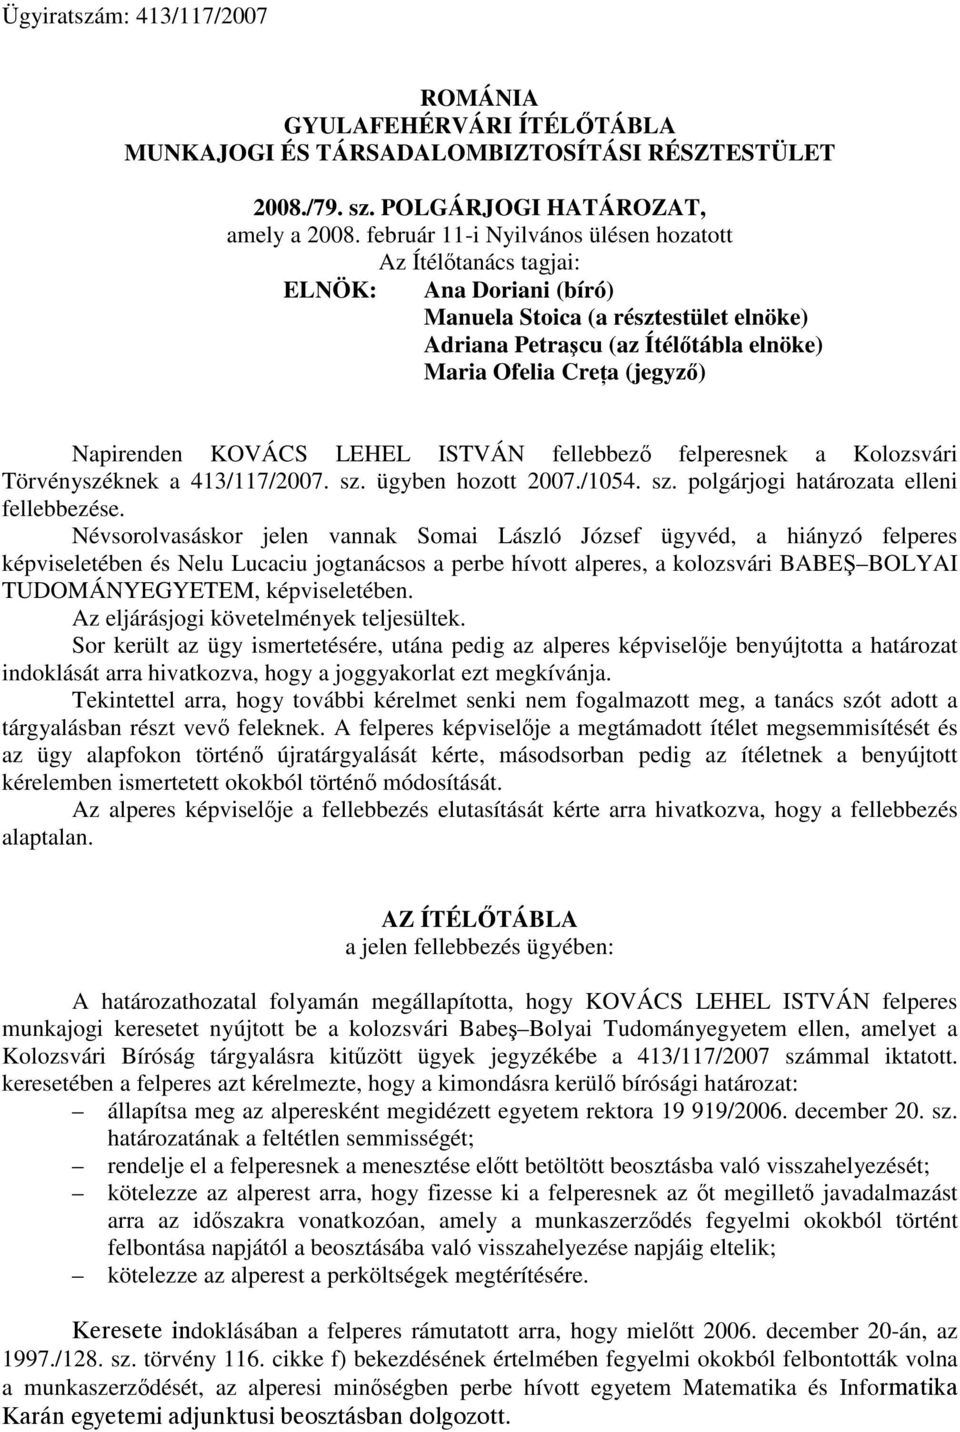 Napirenden KOVÁCS LEHEL ISTVÁN fellebbező felperesnek a Kolozsvári Törvényszéknek a 413/117/2007. sz. ügyben hozott 2007./1054. sz. polgárjogi határozata elleni fellebbezése.